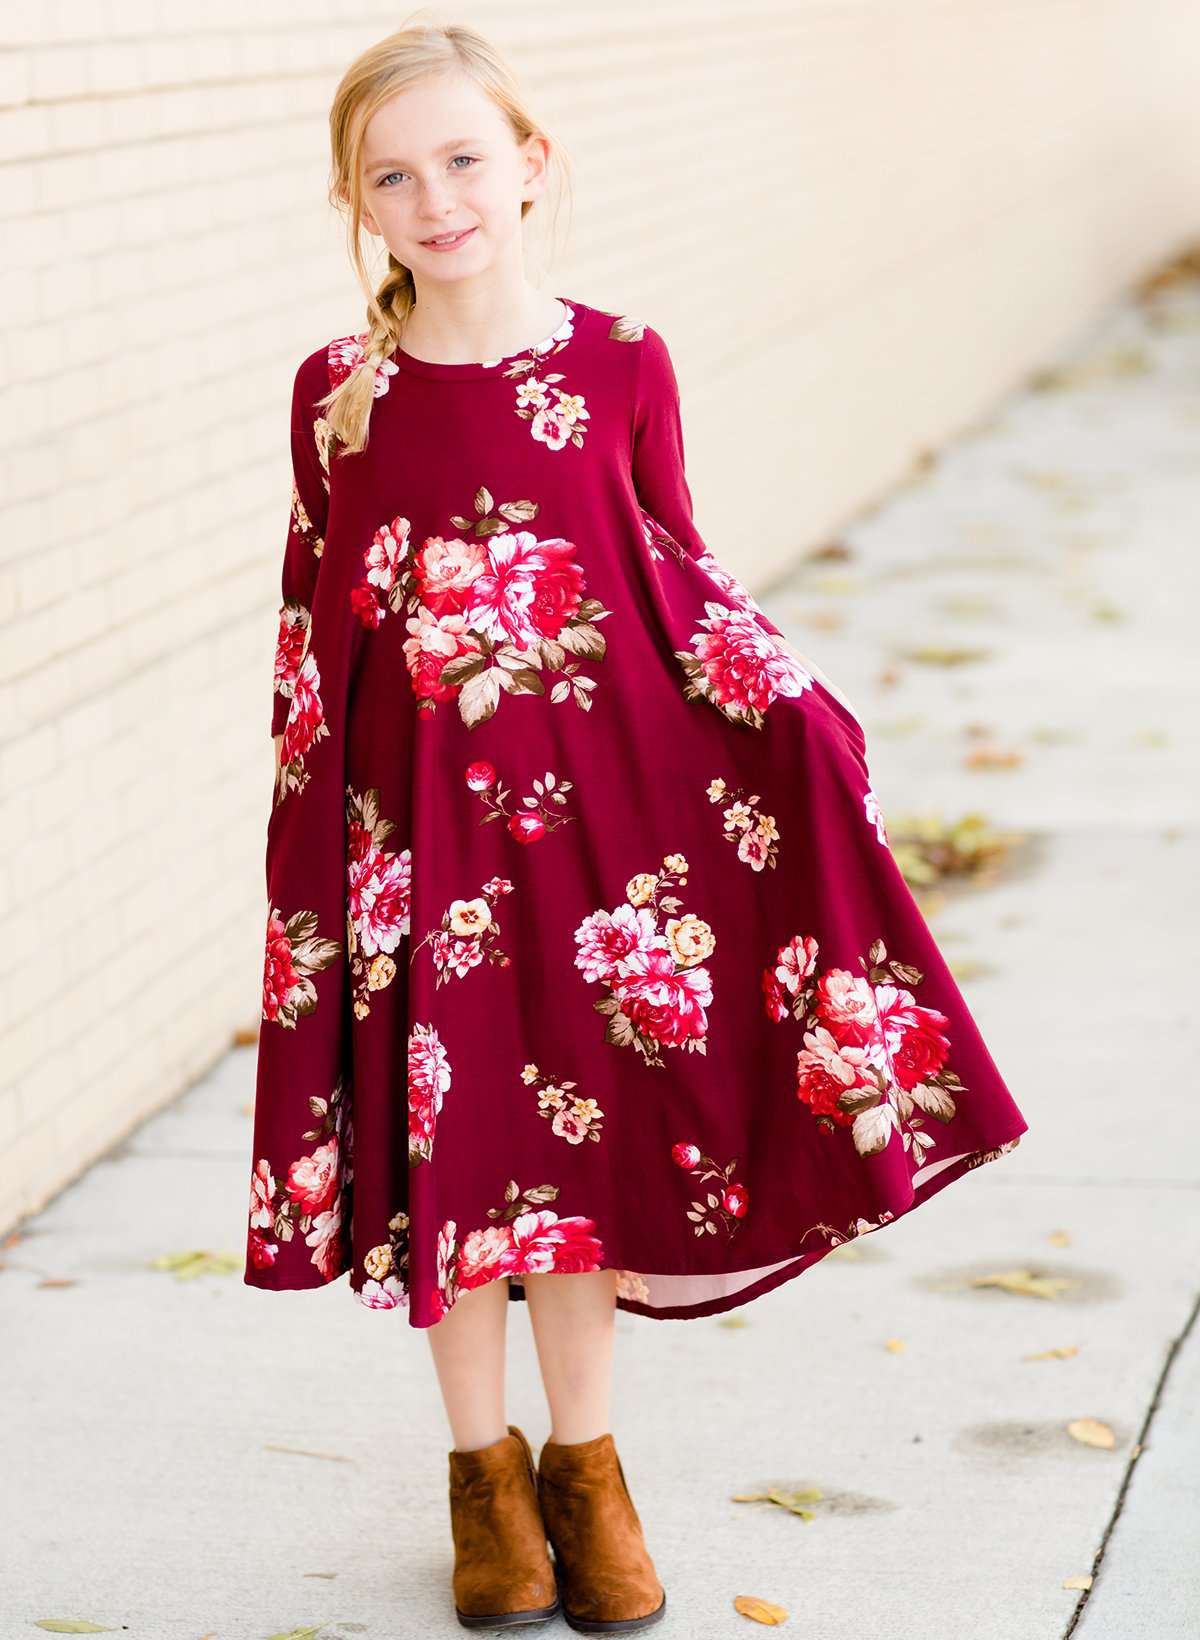 modest dresses for teens